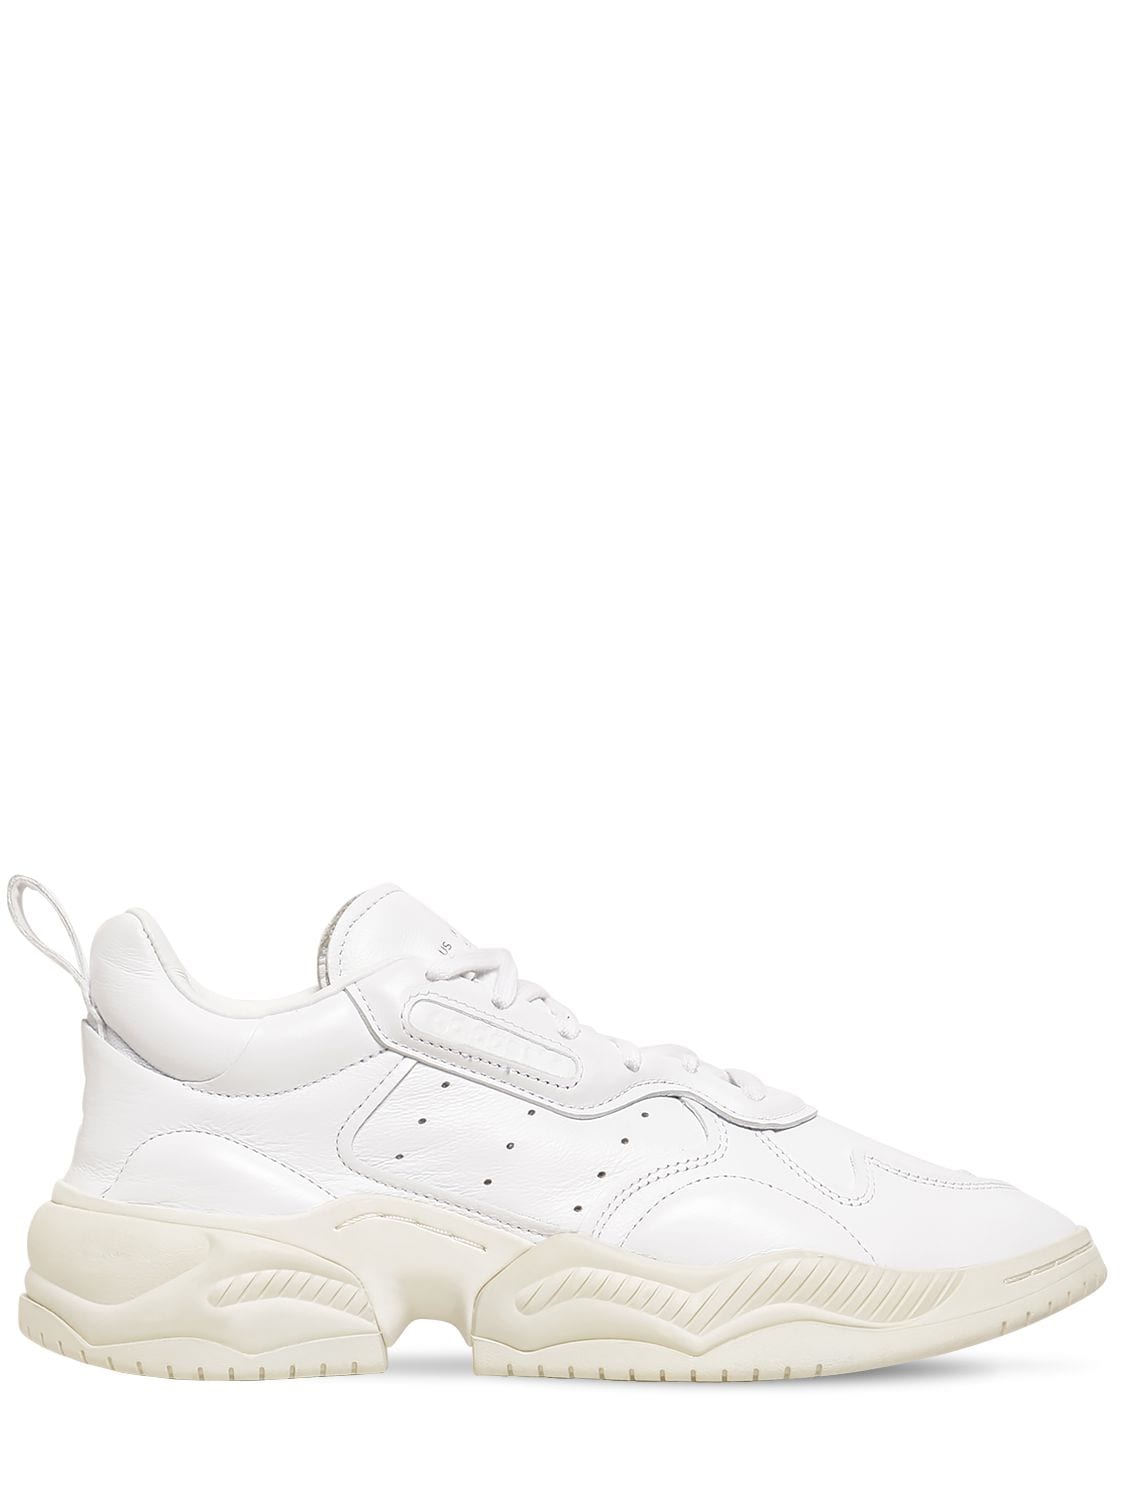 adidas white leather sneaker